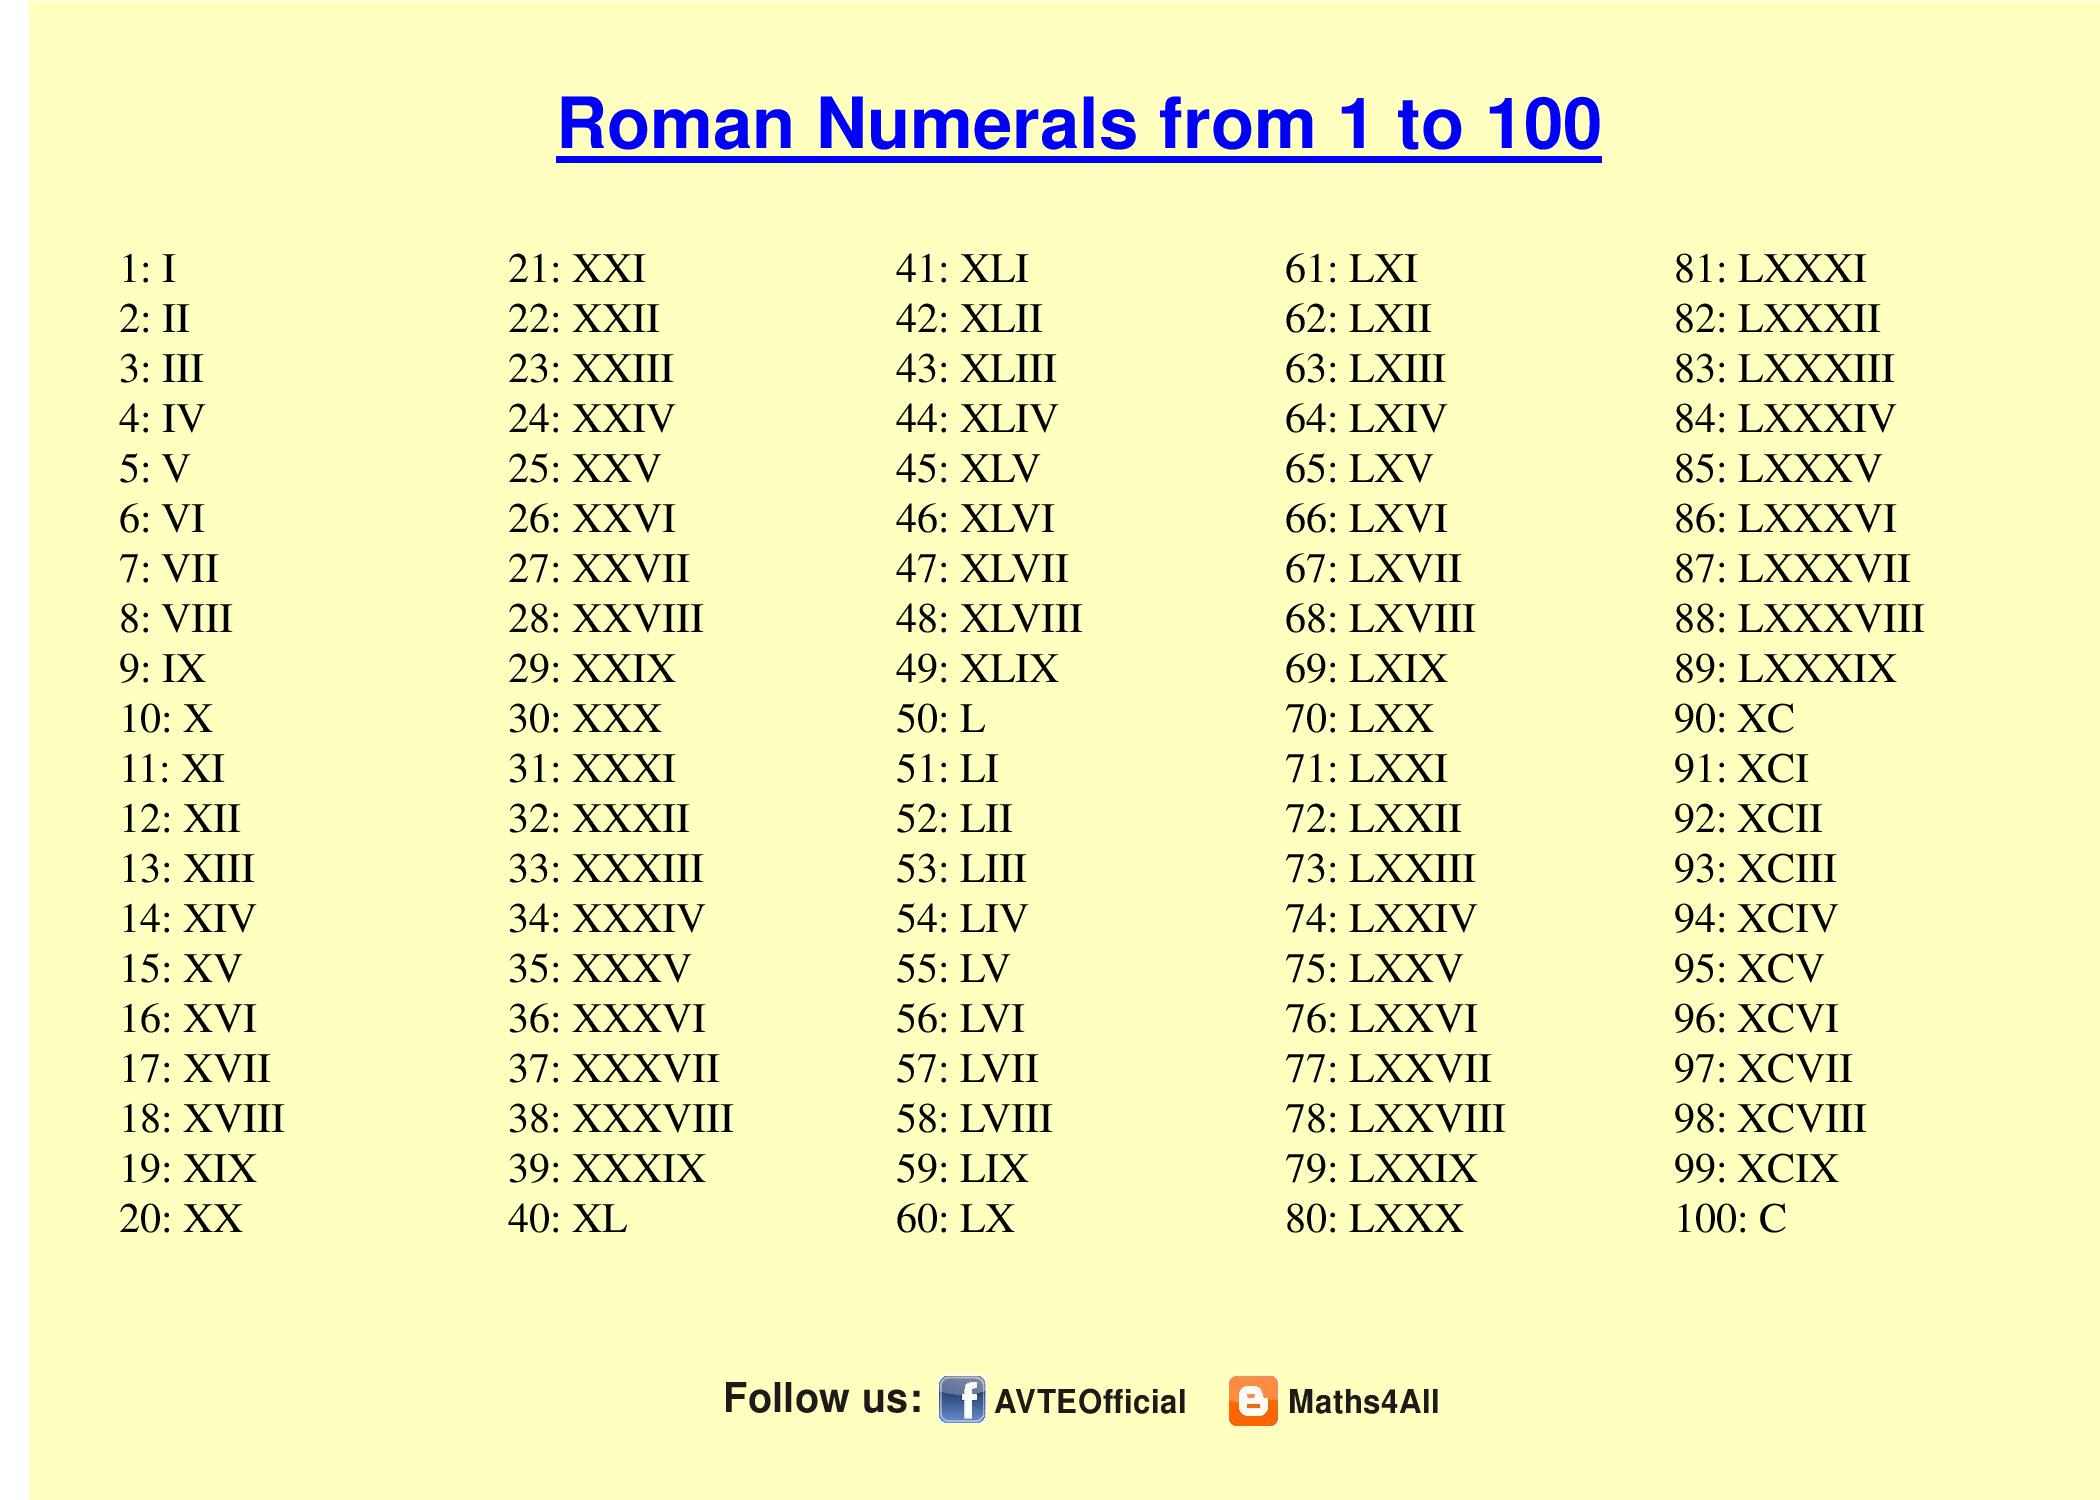 Таблица римских цифр с переводом на русские. Римские 1 до 100. Арабские и римские цифры от1 до 100. Римские цифры с переводом на русские цифры от 1-100. Таблица латинских цифр от 1 до 100.